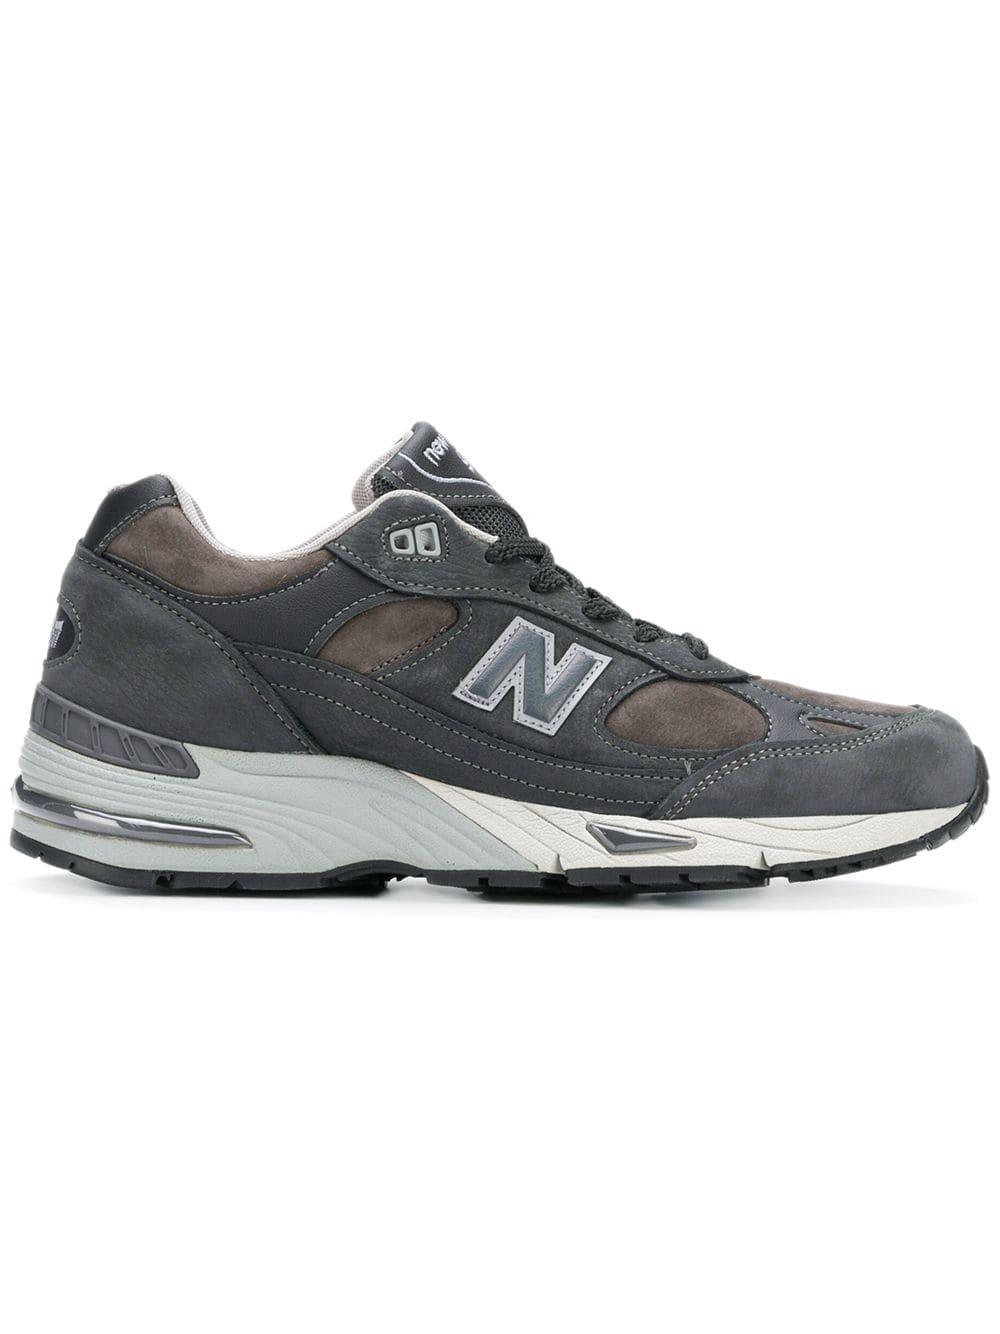 Sneakers 'NB 991'New Balance in Pelle scamosciata da Uomo colore ...